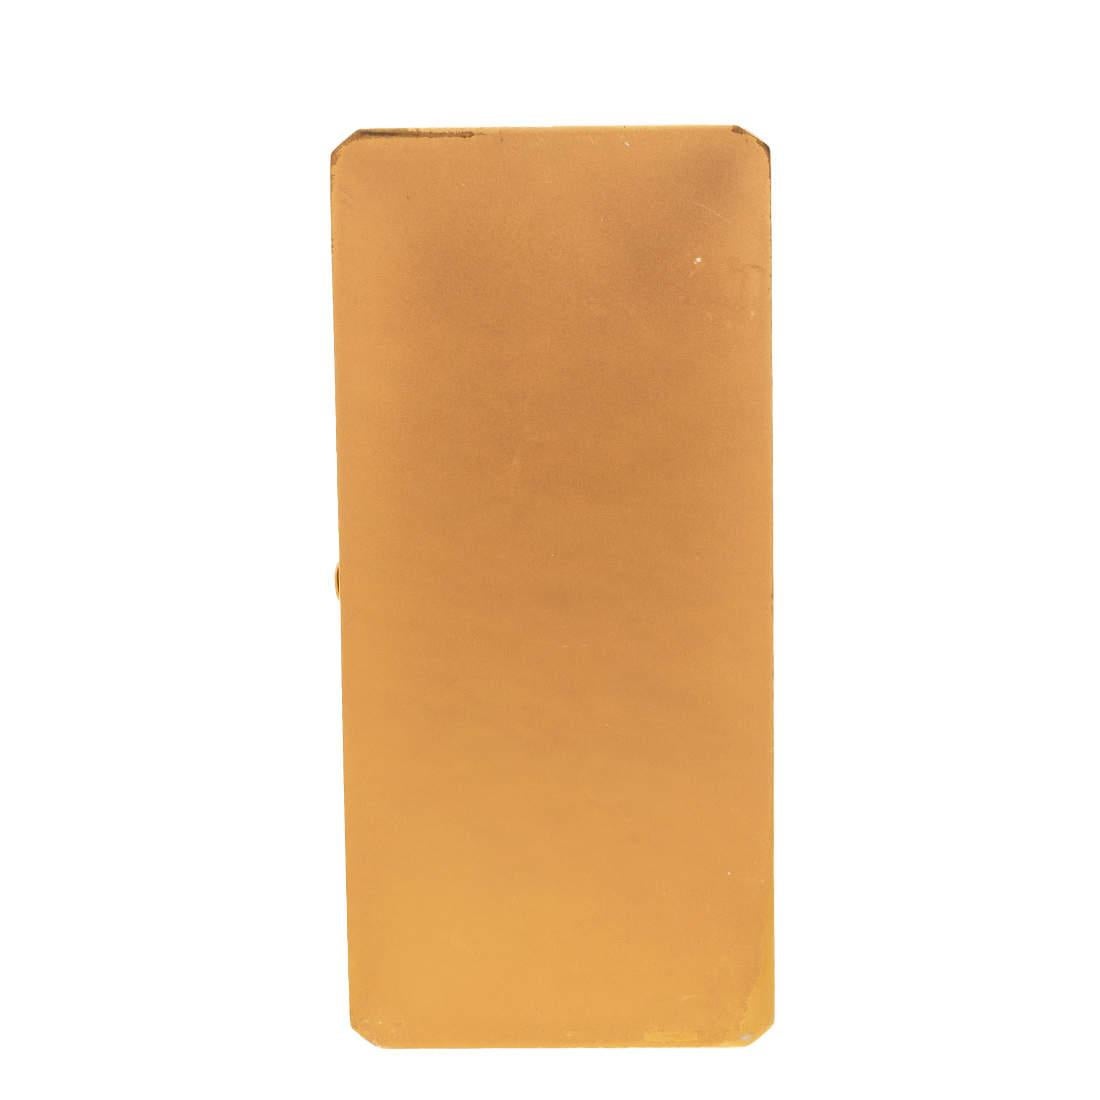 Faites tourner les têtes avec cette pochette unique et brillamment conçue par Charlotte Olympia. Fabriqué en métal doré, ce superbe accessoire est doté d'une forme de boîte bien définie et d'un intérieur en cuir pour y ranger vos essentiels.